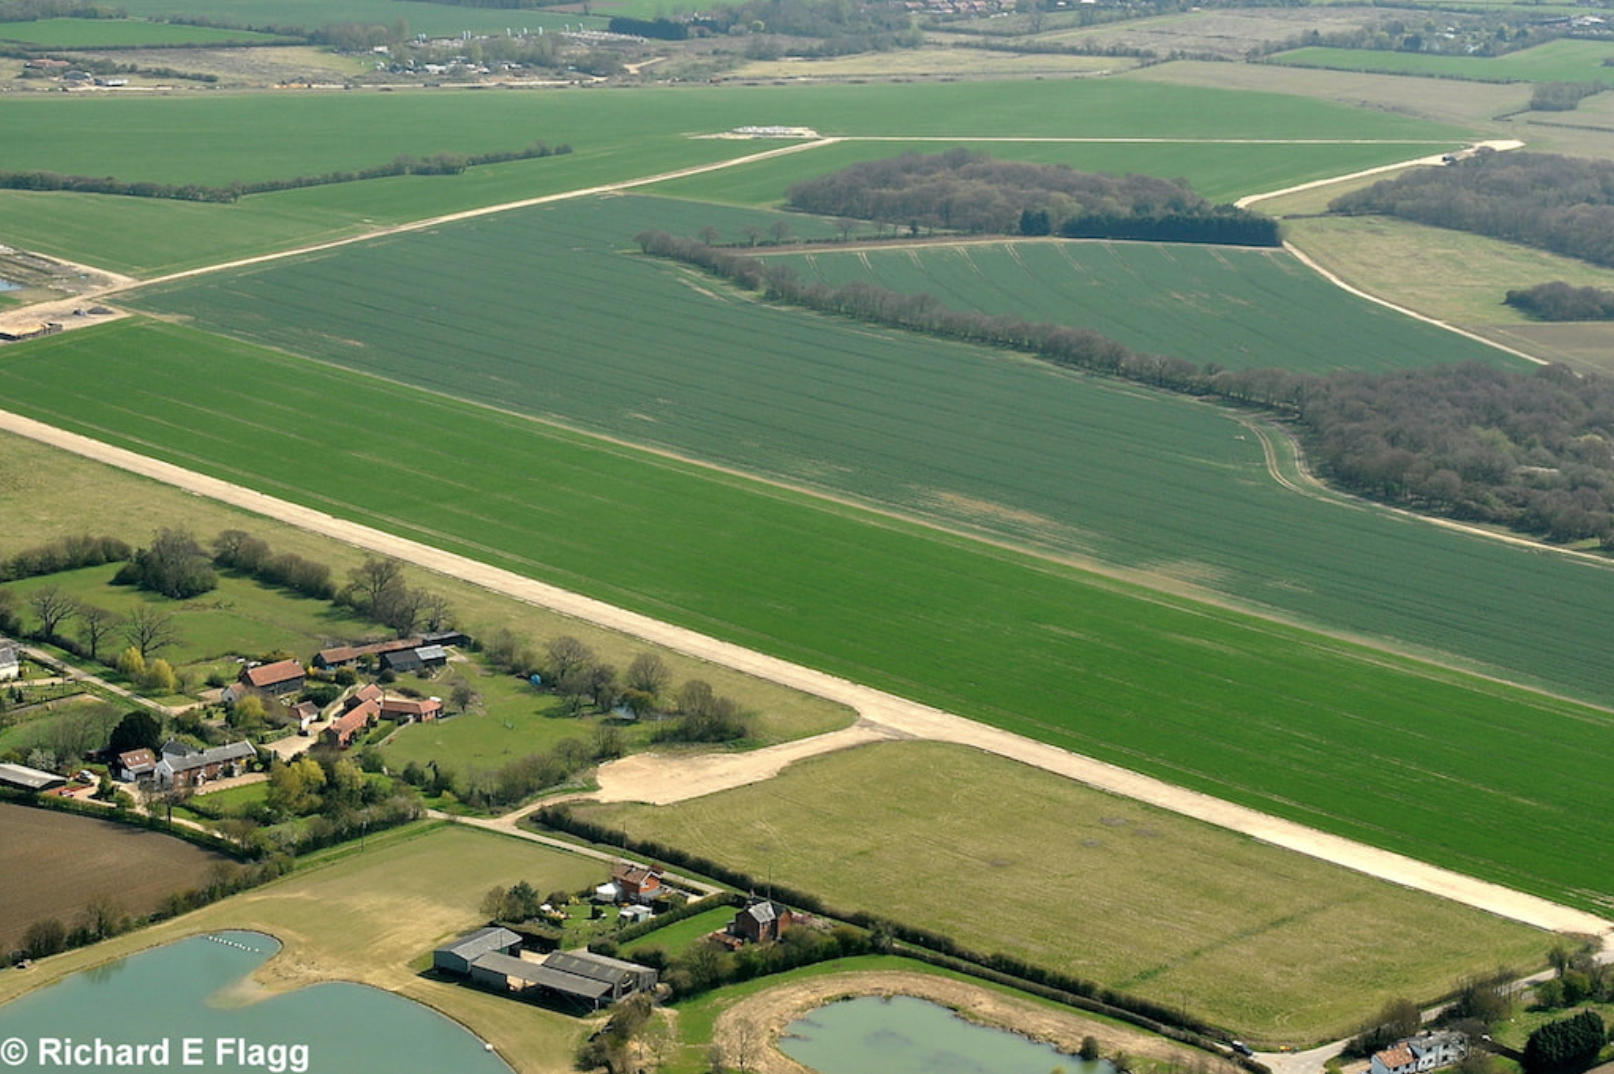 003Aerial View of Langmere Airstrip - 18 April 2010.png